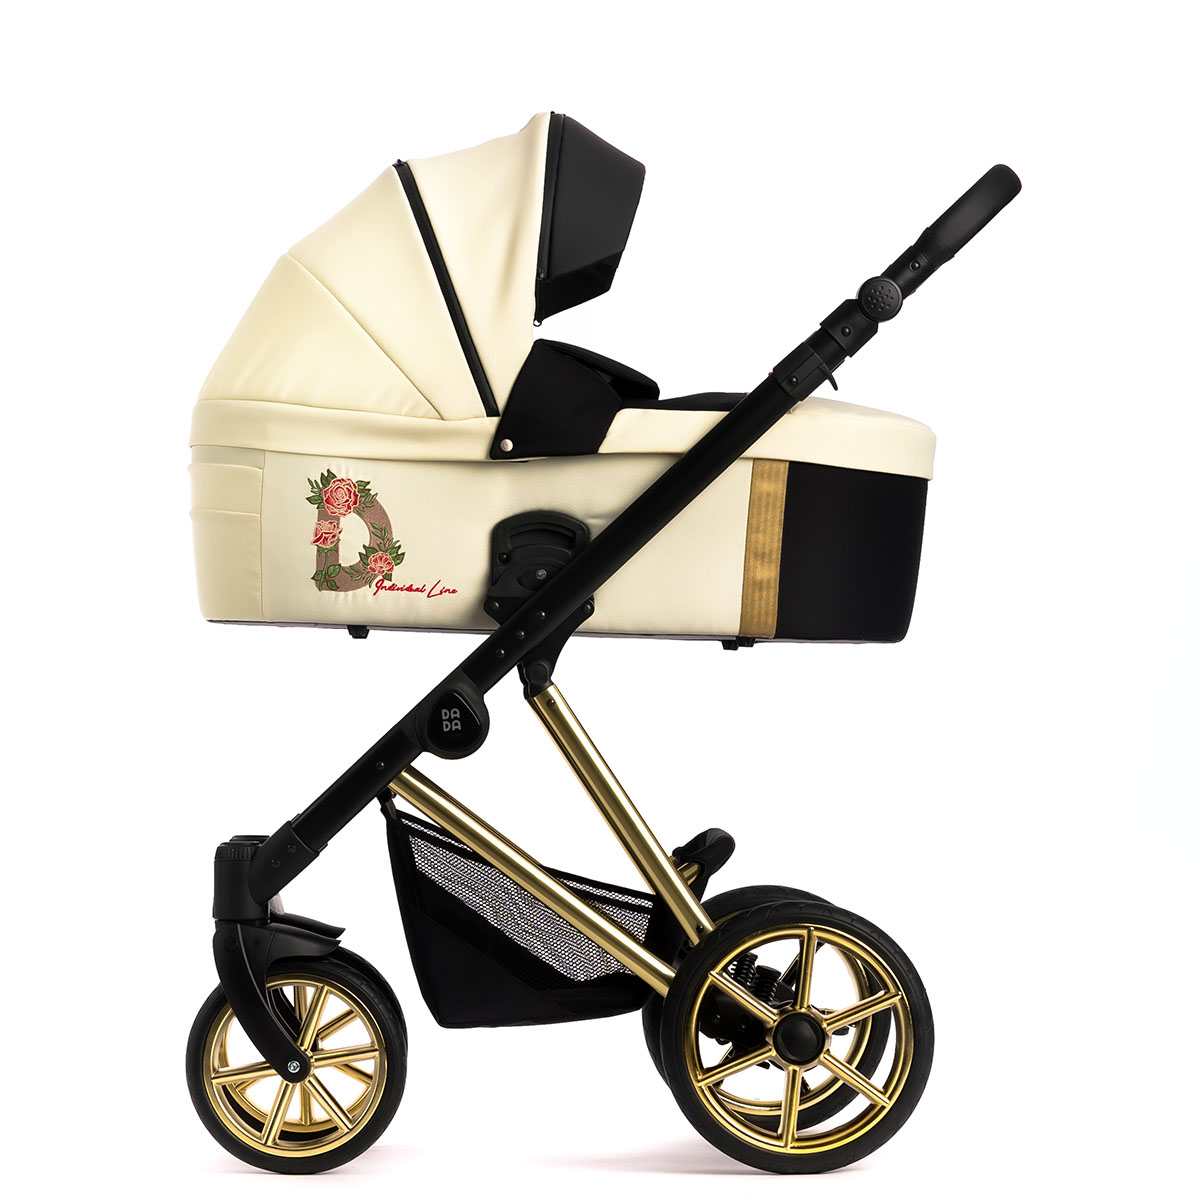 Wózek dla dziecka, model Individual Blossom - widok z boku